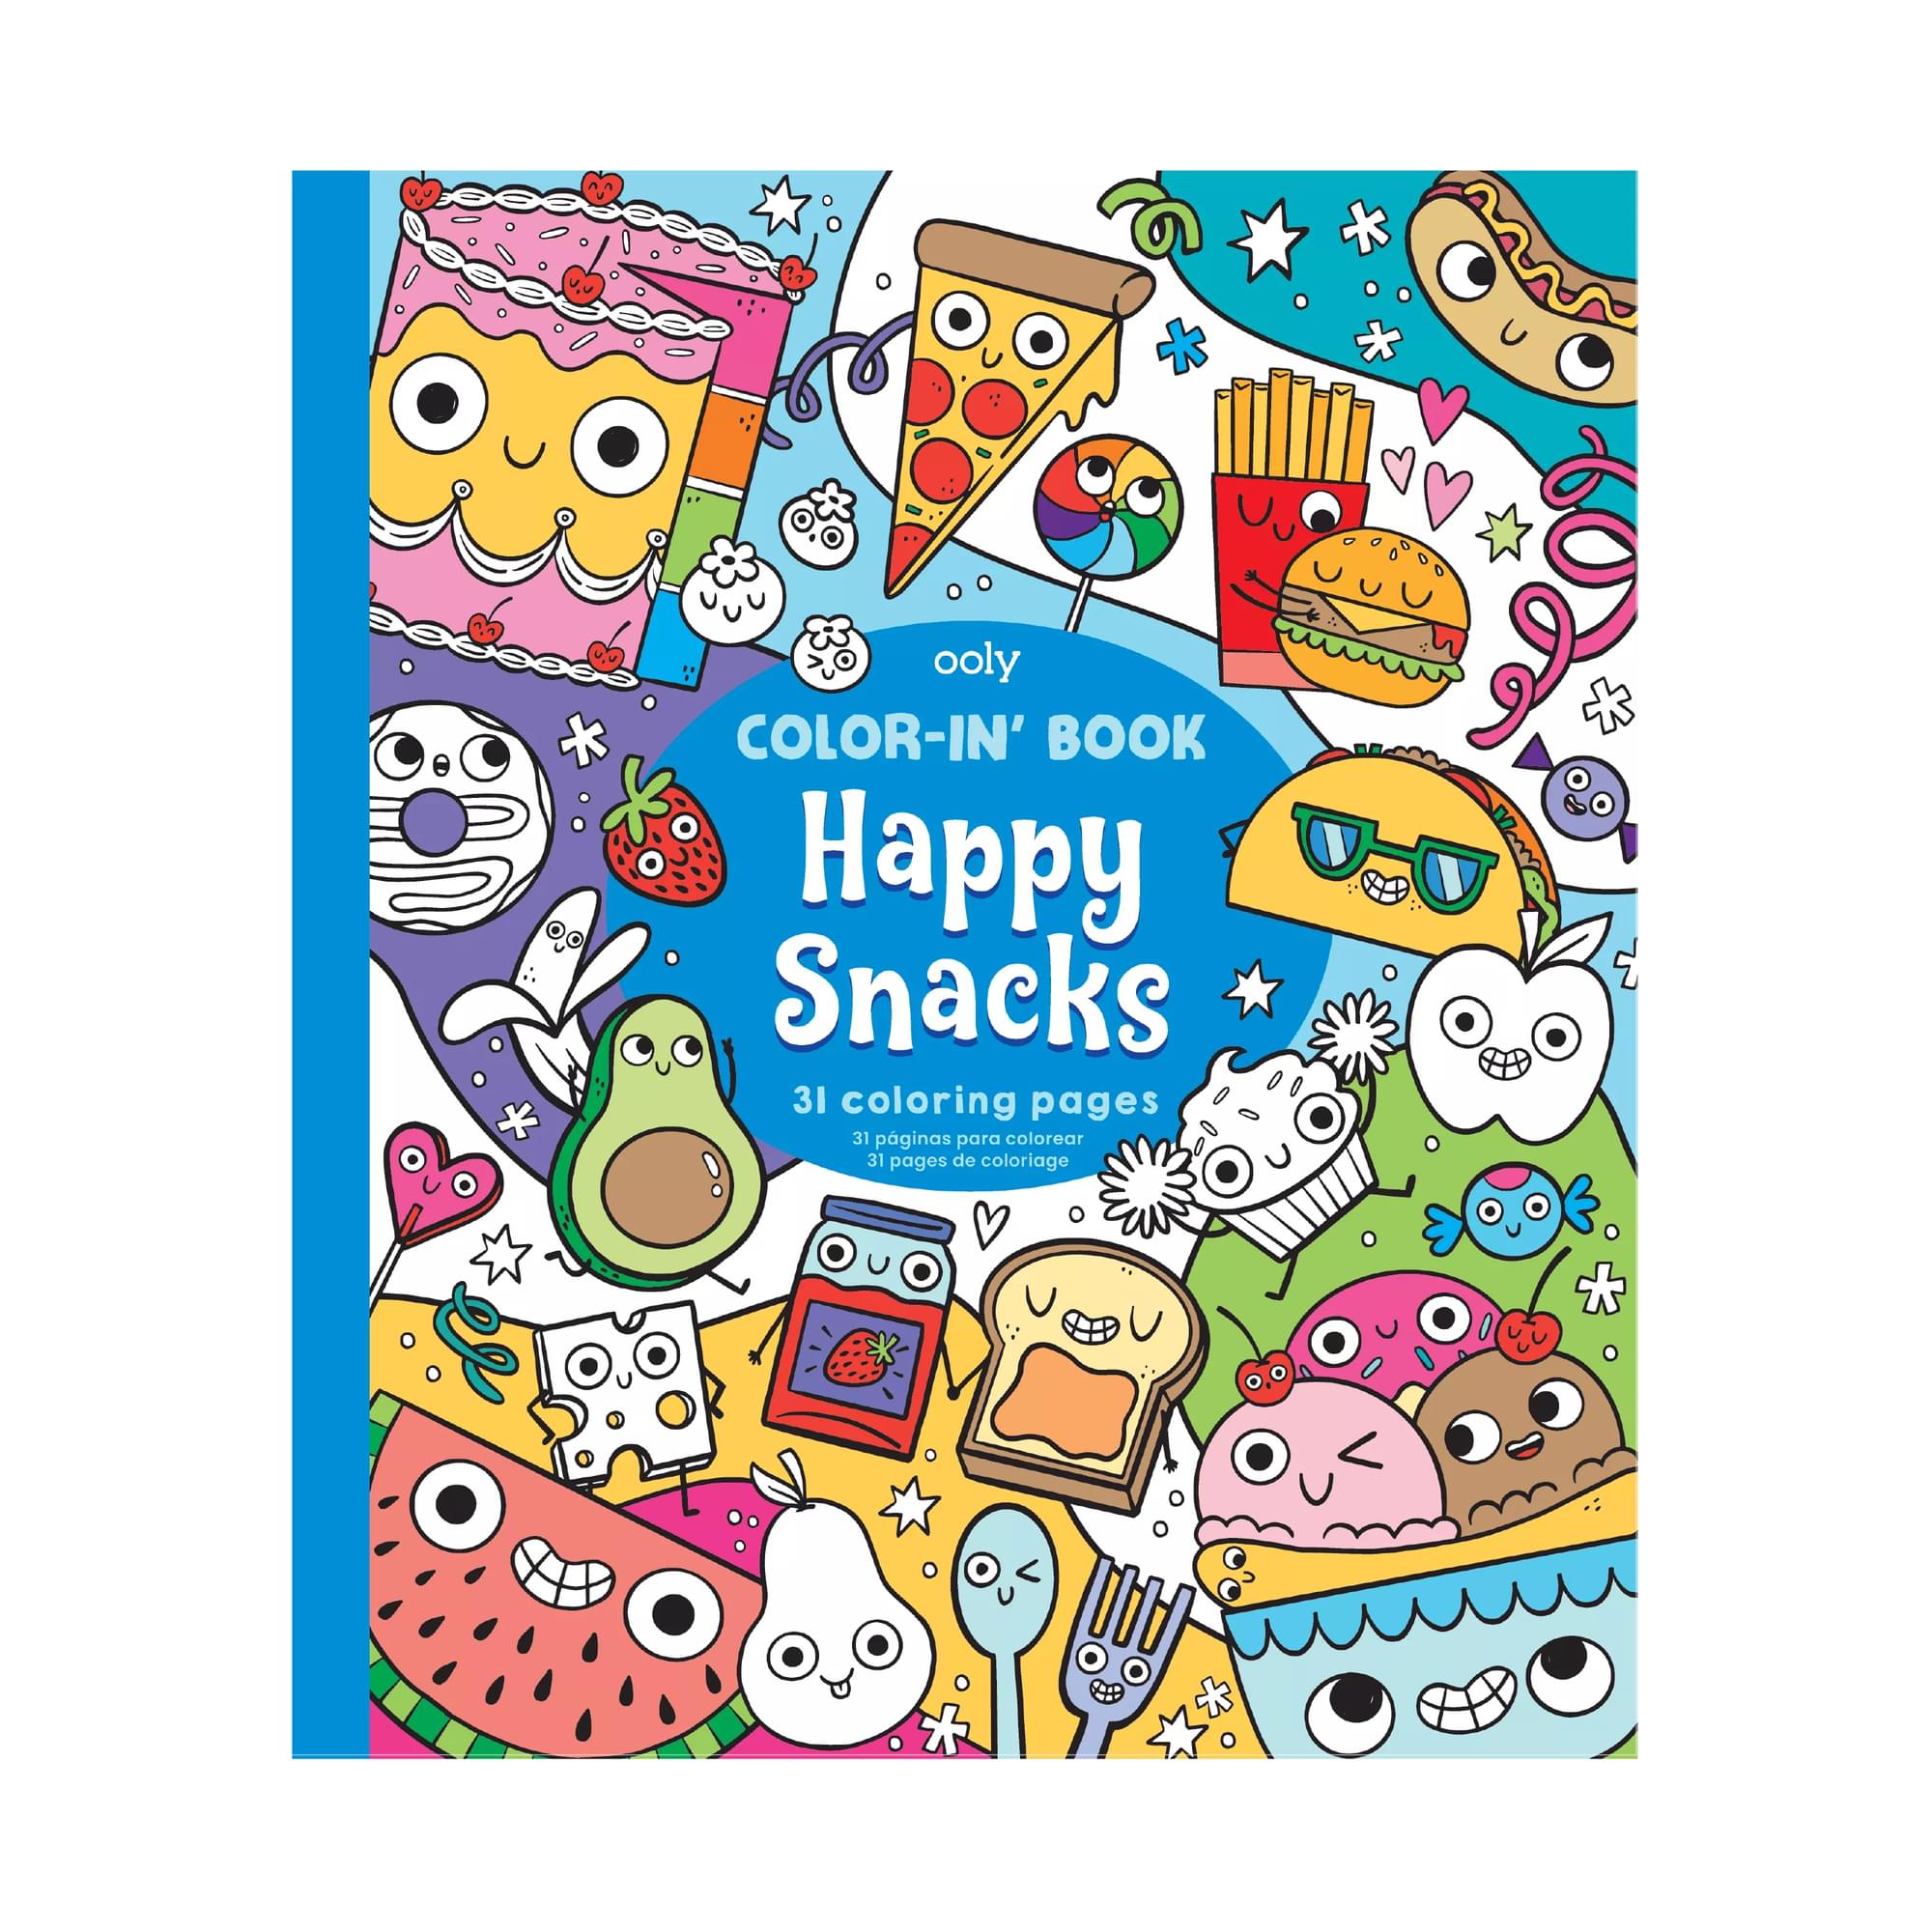 Color-in' Book Coloring Book - Happy Snacks